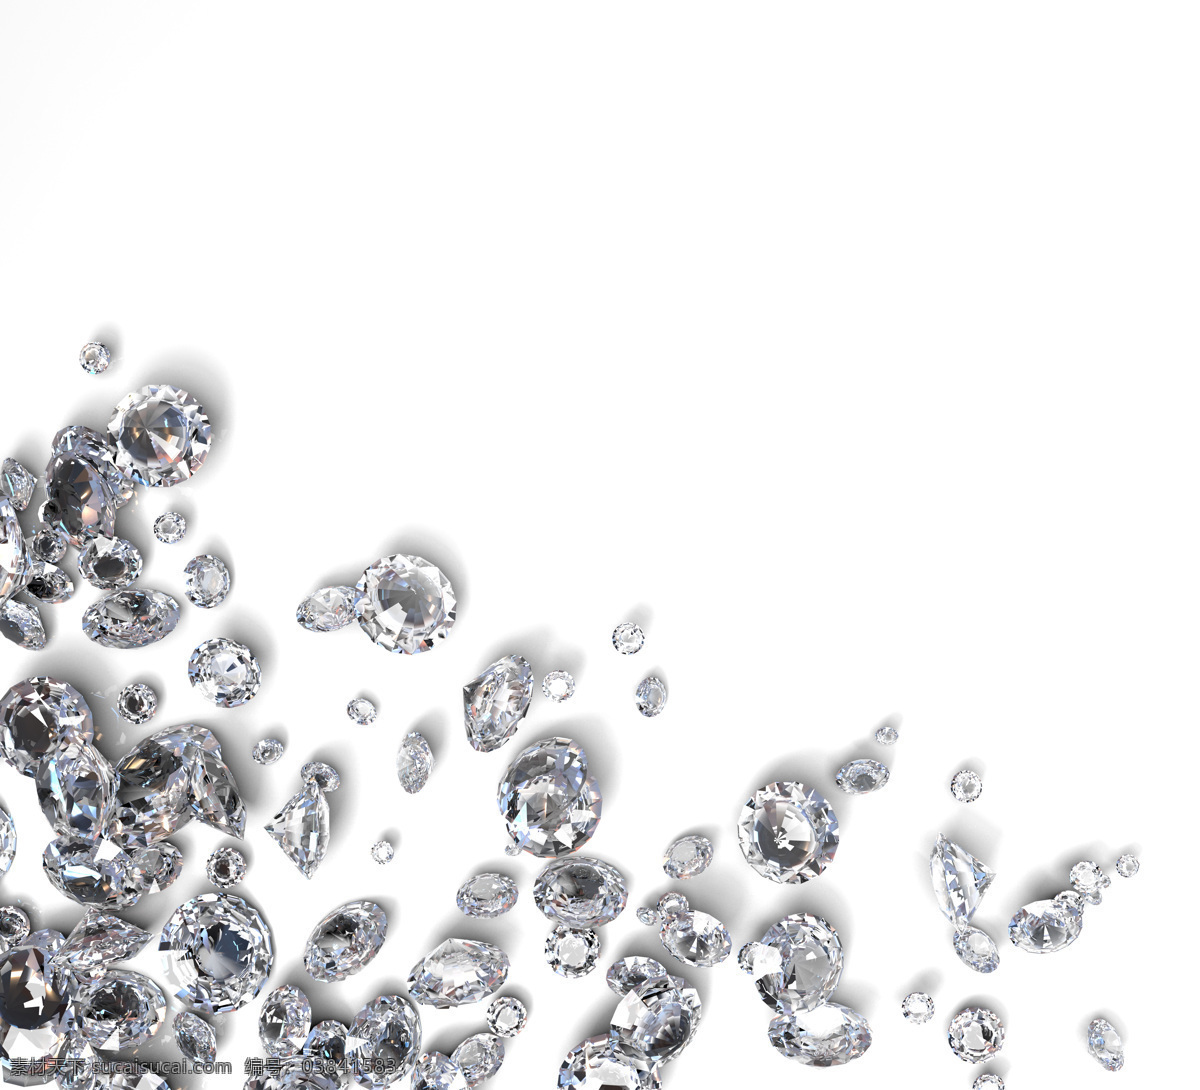 钻石 背景 素材图片 水晶 钻石摄影 钻石素材 珠宝 饰品 首饰 珠宝服饰 生活百科